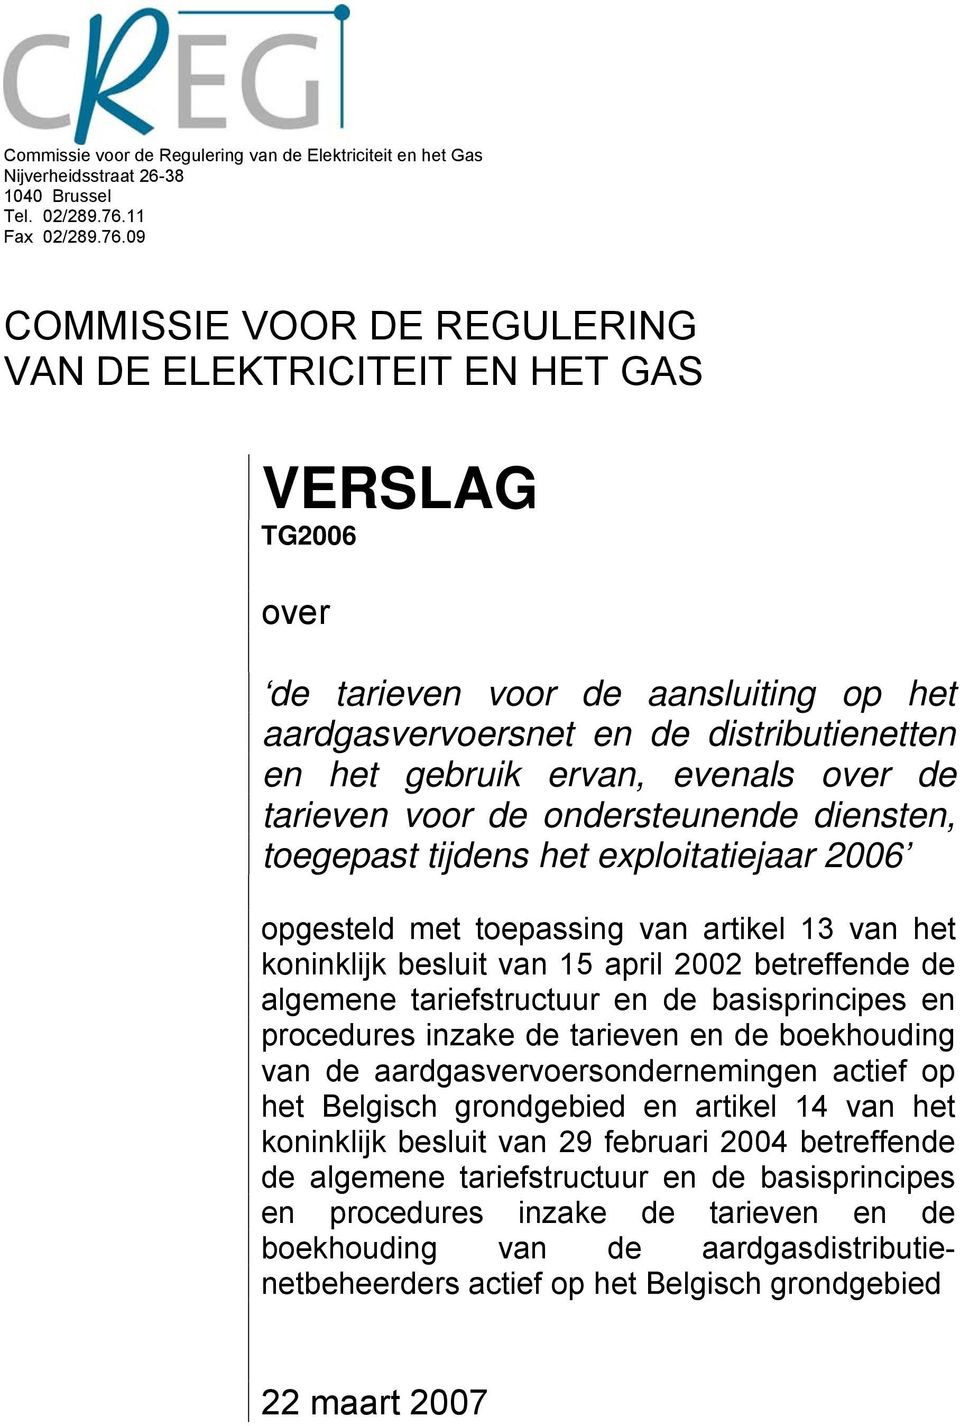 09 COMMISSIE VOOR DE REGULERING VAN DE ELEKTRICITEIT EN HET GAS VERSLAG TG2006 over de tarieven voor de aansluiting op het aardgasvervoersnet en de distributienetten en het gebruik ervan, evenals